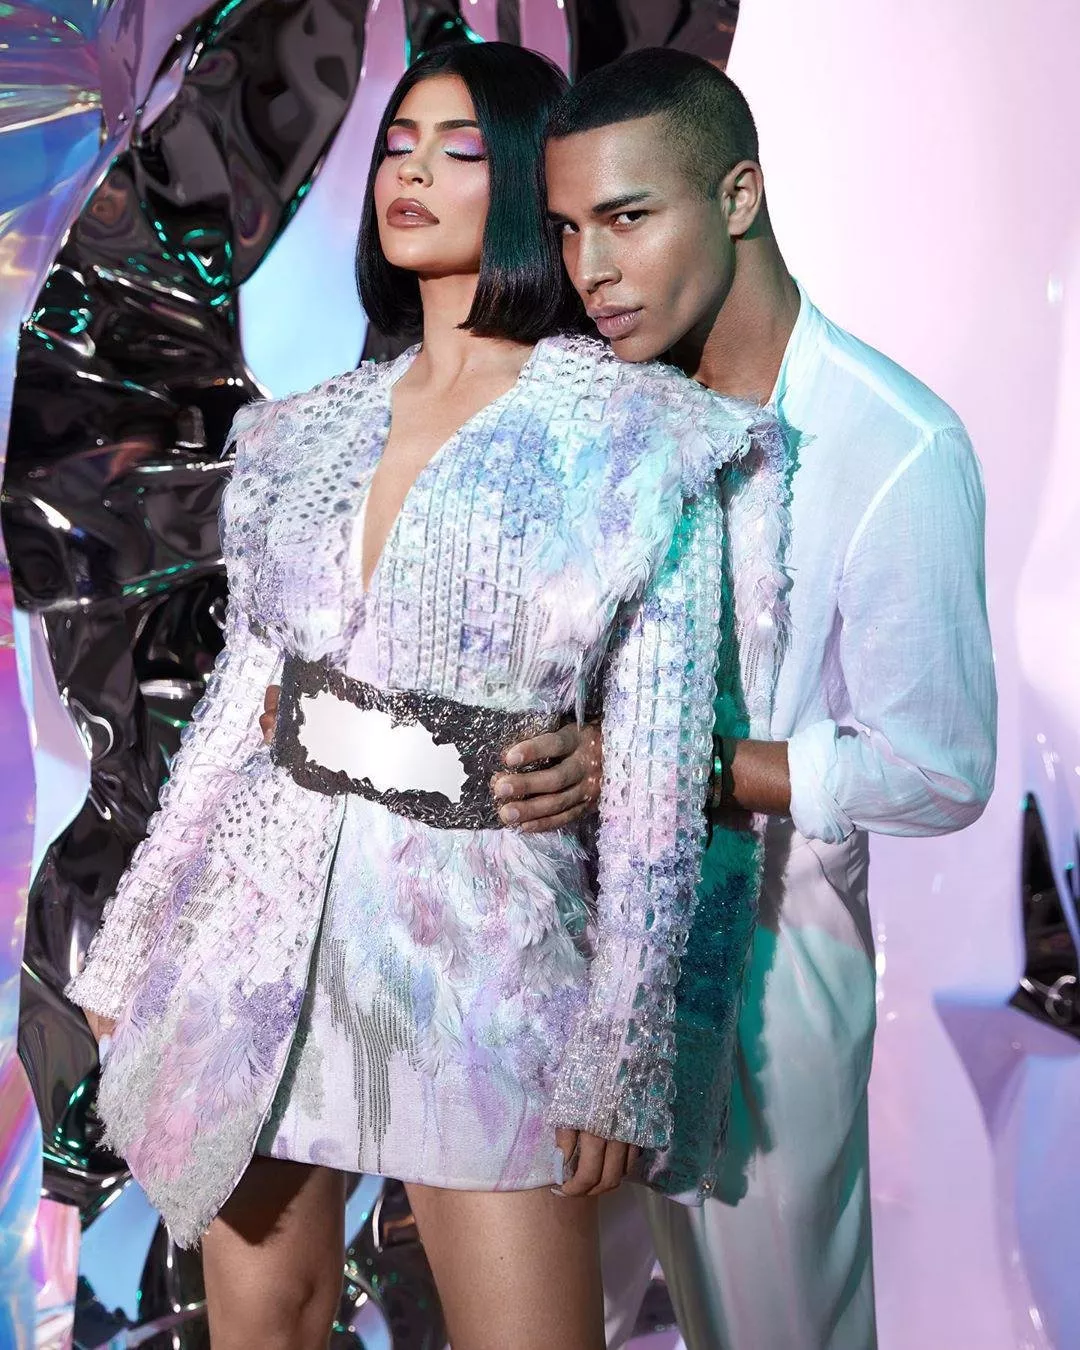 إطلاق مجموعة مكياج Kylie Cosmetics X Balmain ضمن أسبوع الموضة الباريسيّ